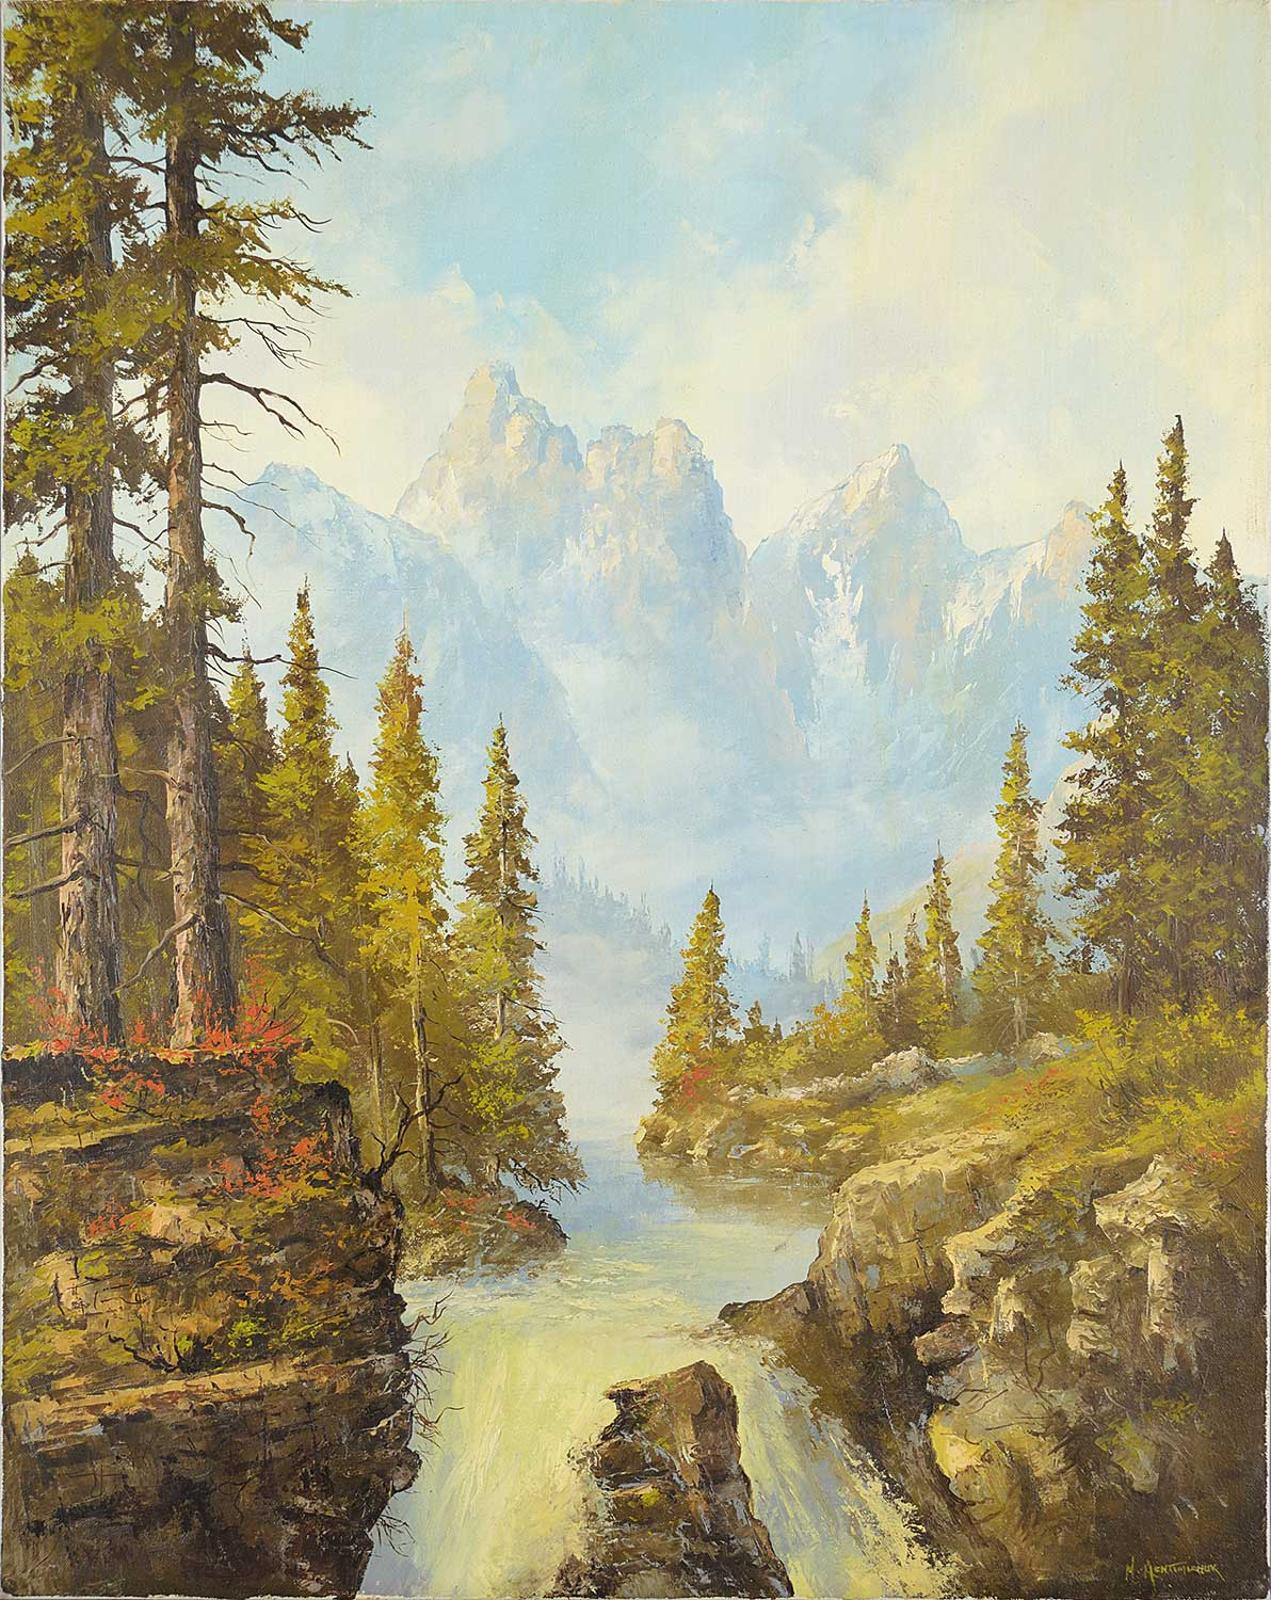 Milton Achtimichuk (1935) - Untitled - Mountain Waterfall